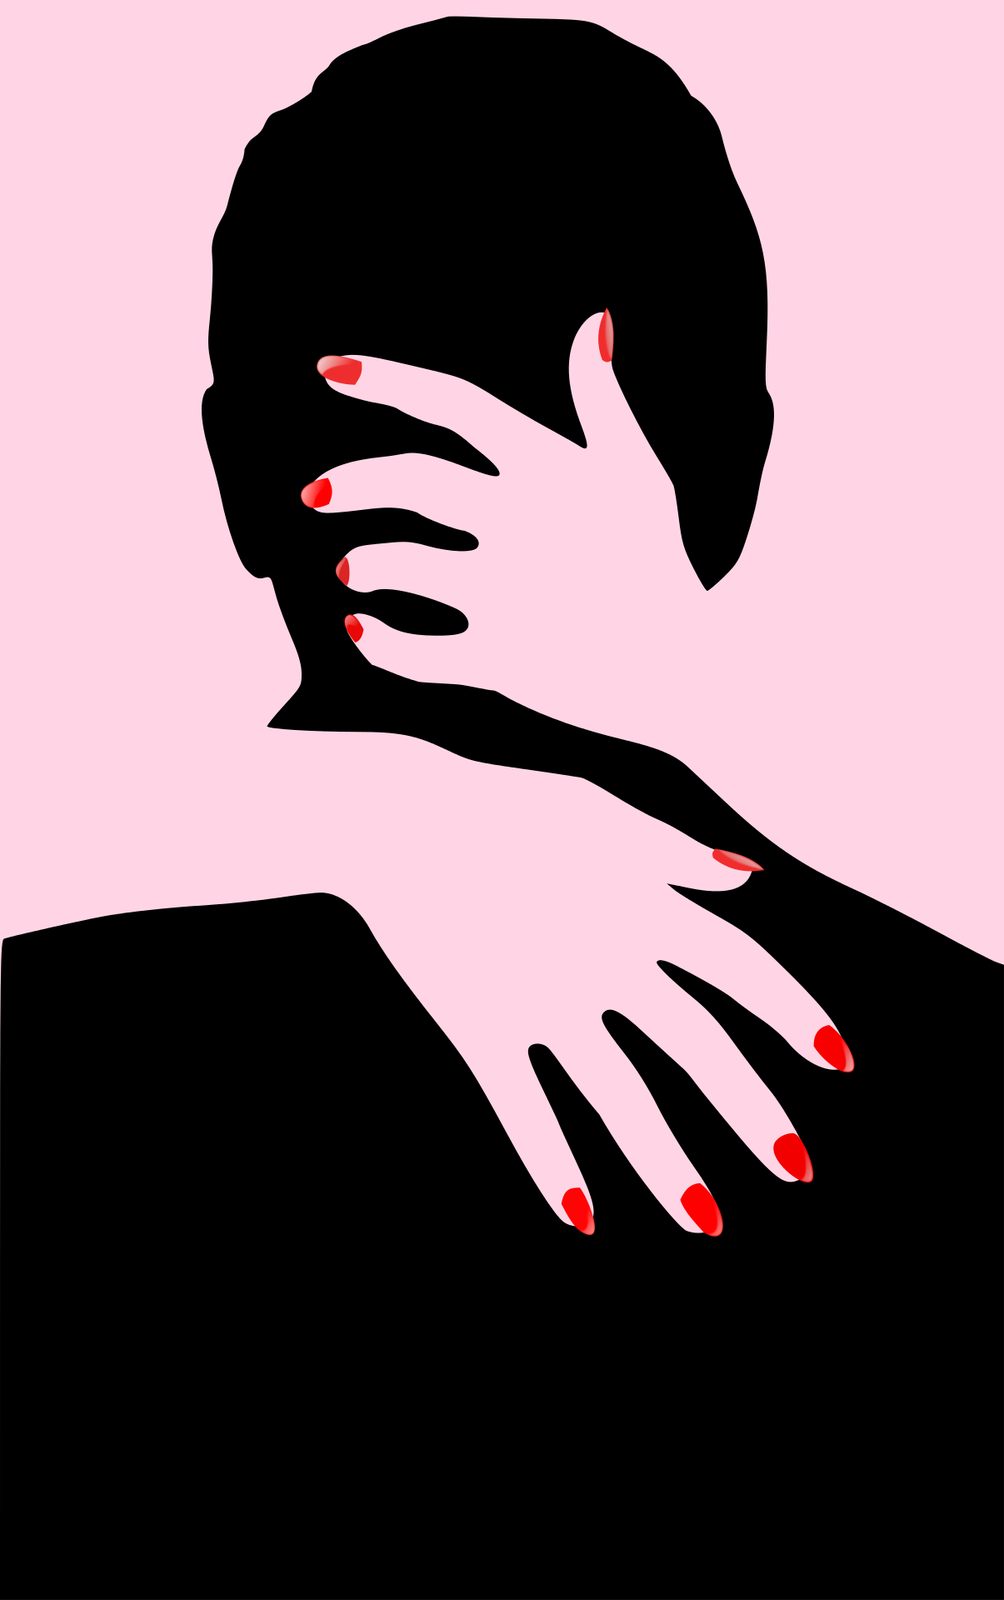 Grafika przedstawia czarny zarys głowy mężczyzny ukazanej od tyłu. Jego głowa obejmowana jest przez kobiecą dłoń. Prawa ręka kobiety oparta jest na plecach mężczyzny. Lewa ręka oparta jest na karku i głowie. Paznokcie kobiety są pomalowane na czerwono. Tło grafiki jest różowe. 